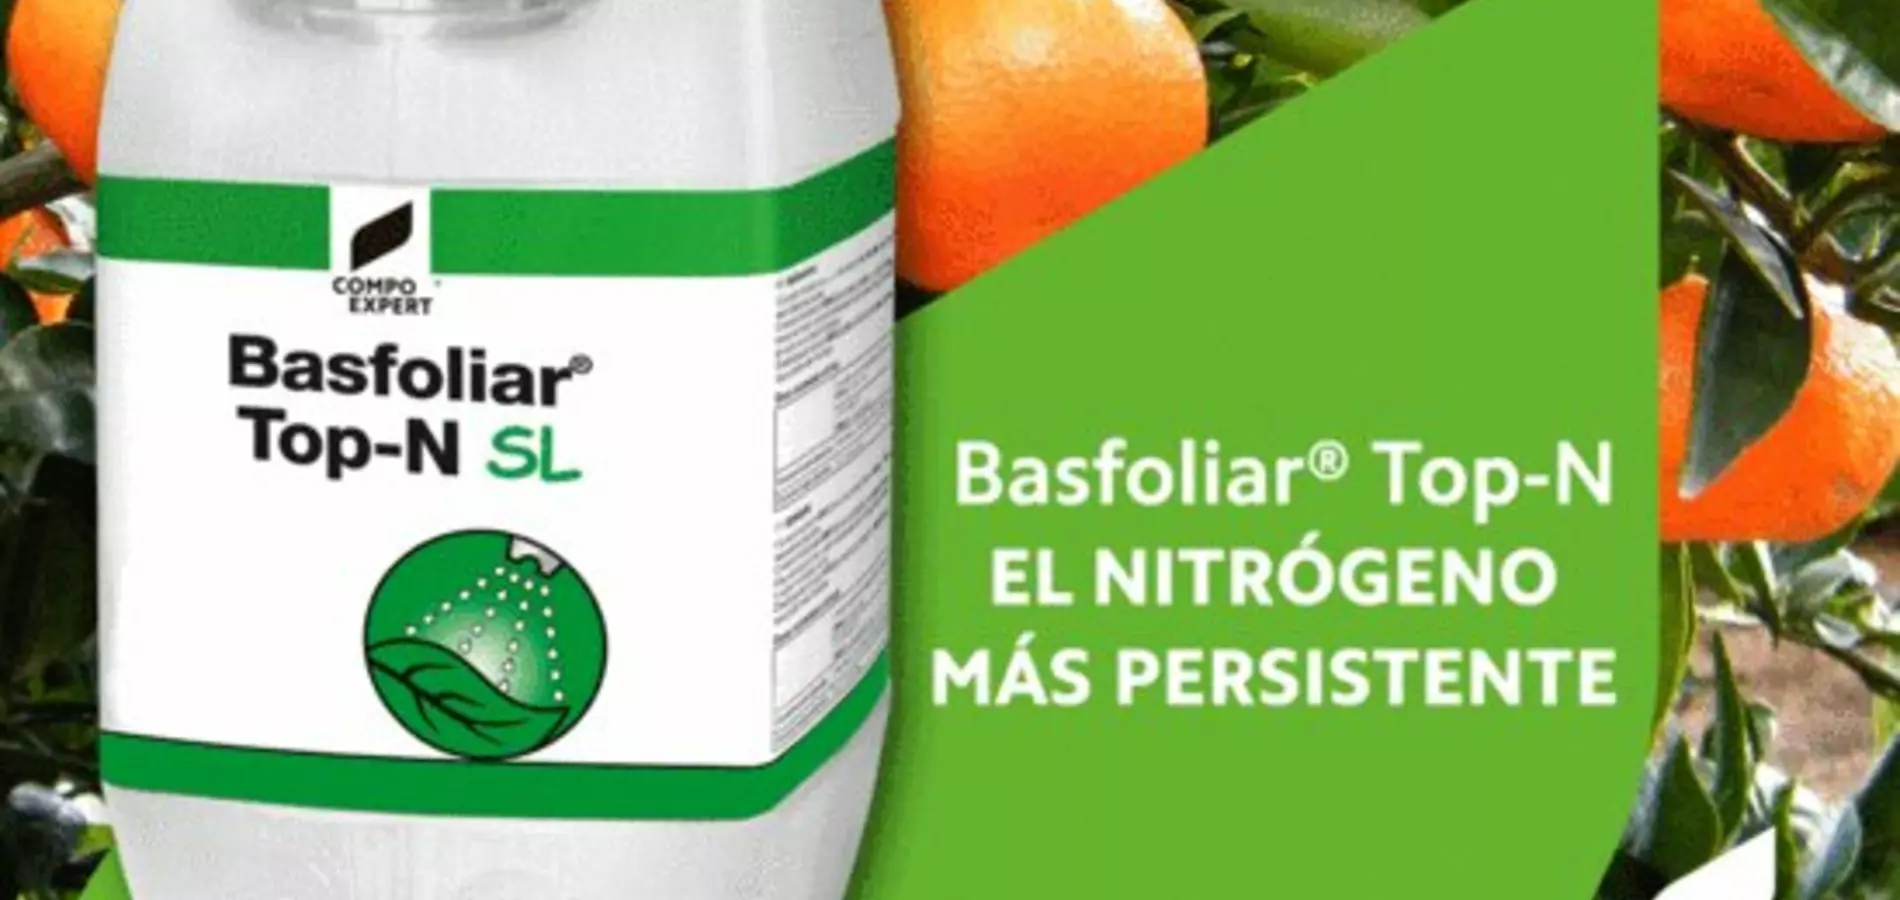 Basfoliar® Top-N es una solución de liberación lenta de nitrógeno en forma de Urea formaldehido diseñado especialmente para aplicación foliar.